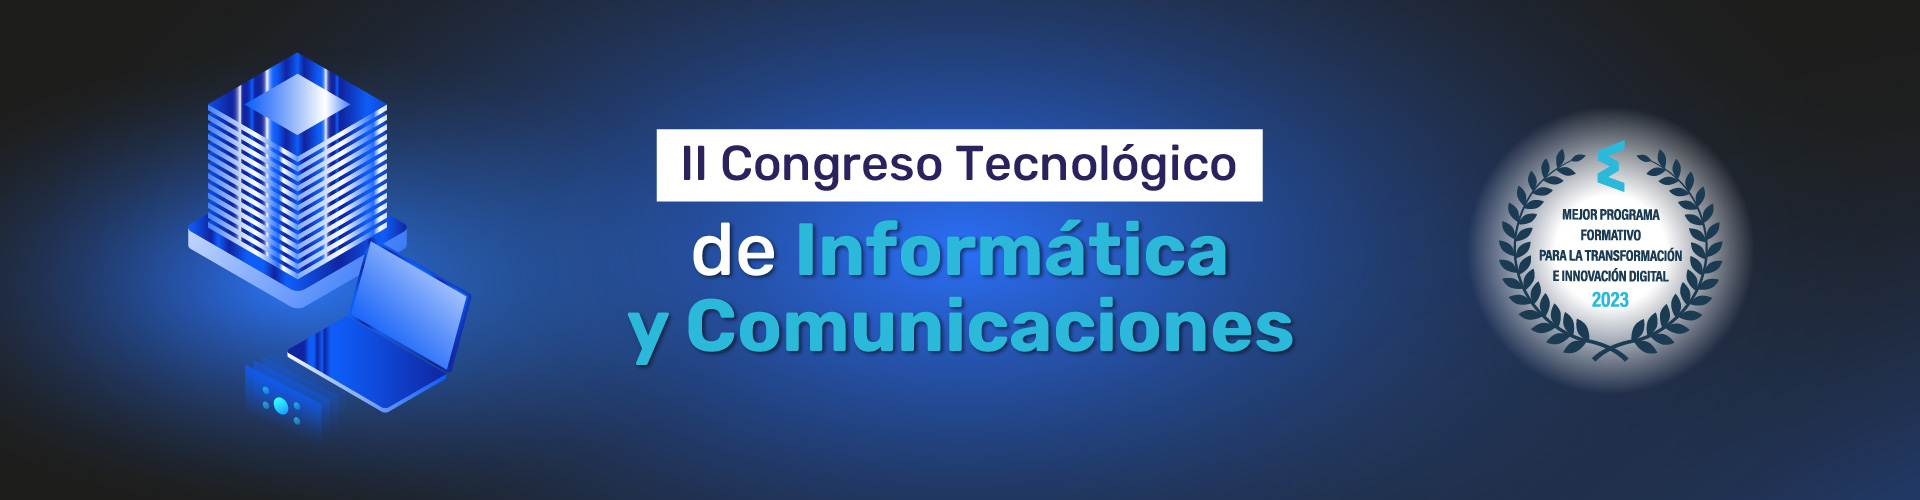 II Congreso Tecnológico de Informática y Comunicaciones MasterD